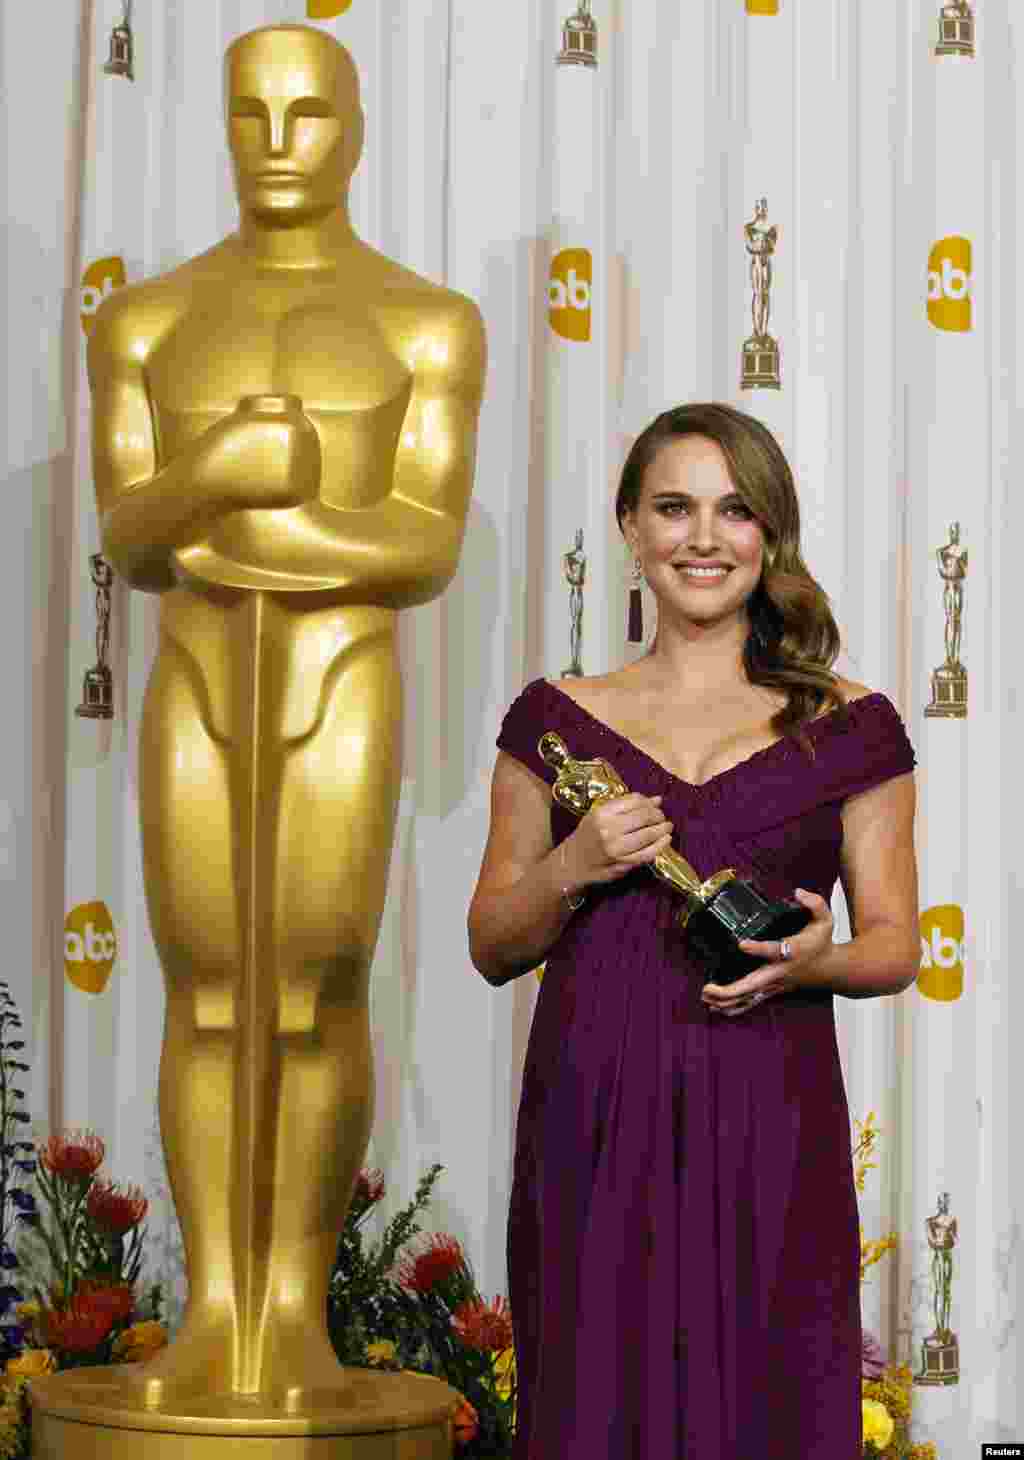 نتالی پورٹمین فلم بلیک سوان میں اداکاری پر بہترین اداکارہ کا آسکر ایوارڈ حاصل کرچکی ہیں۔